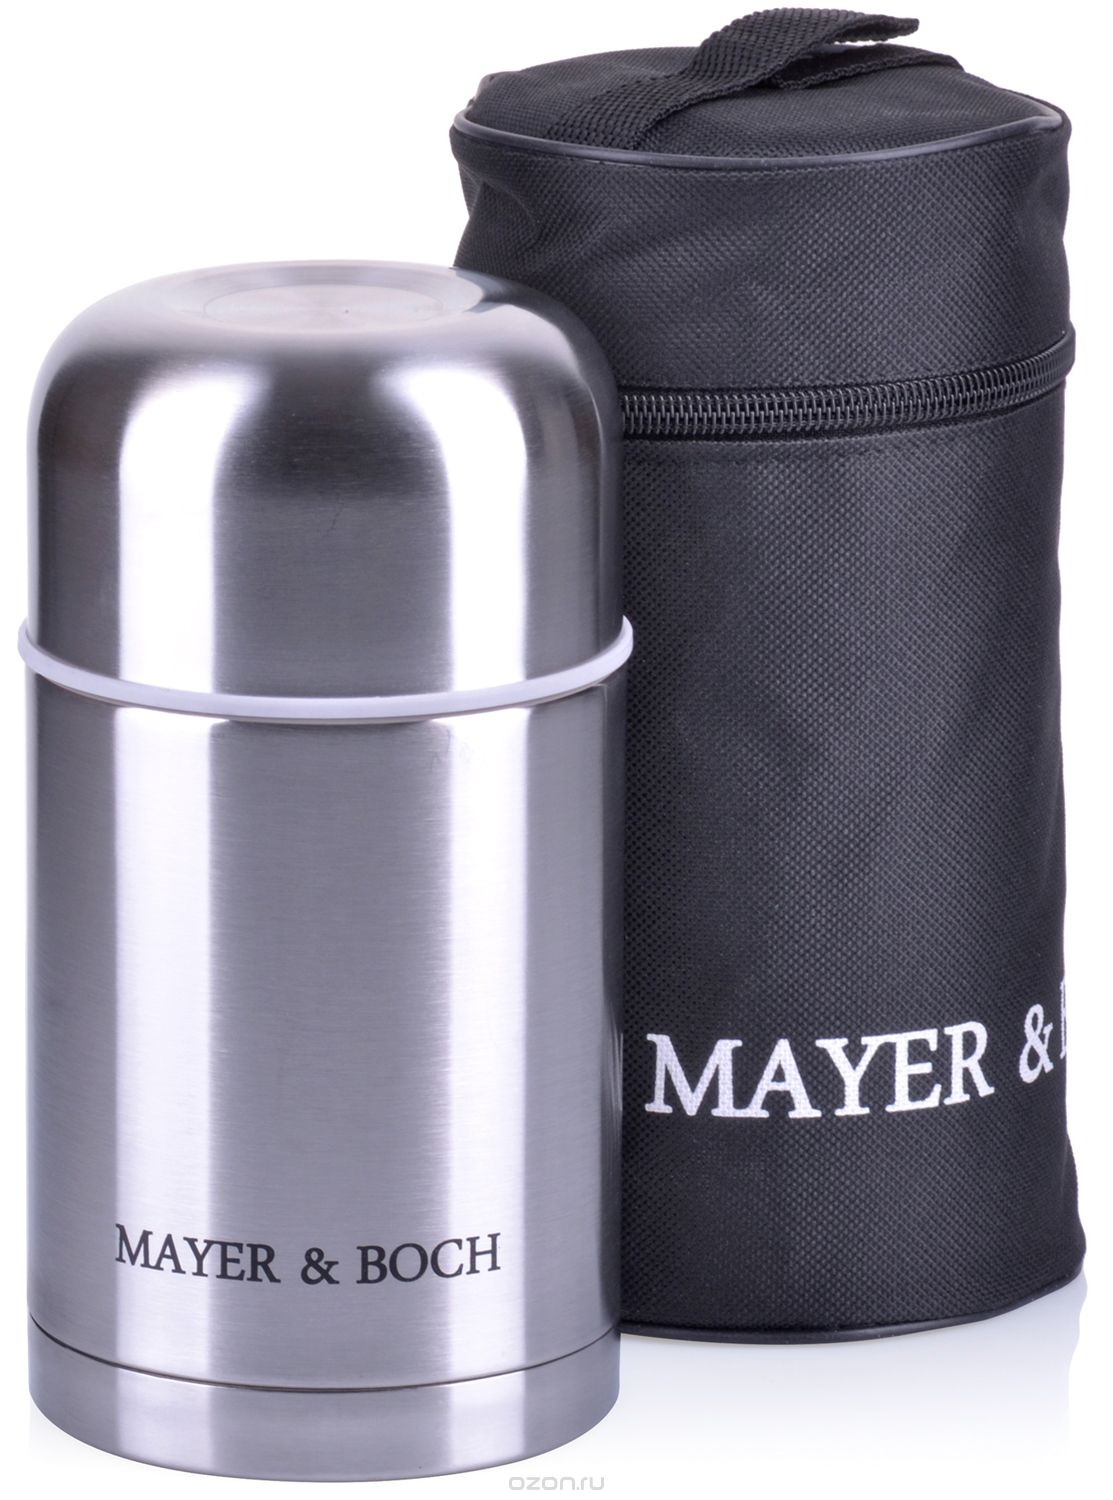  Mayer & Boch,  , : ,  0,6 